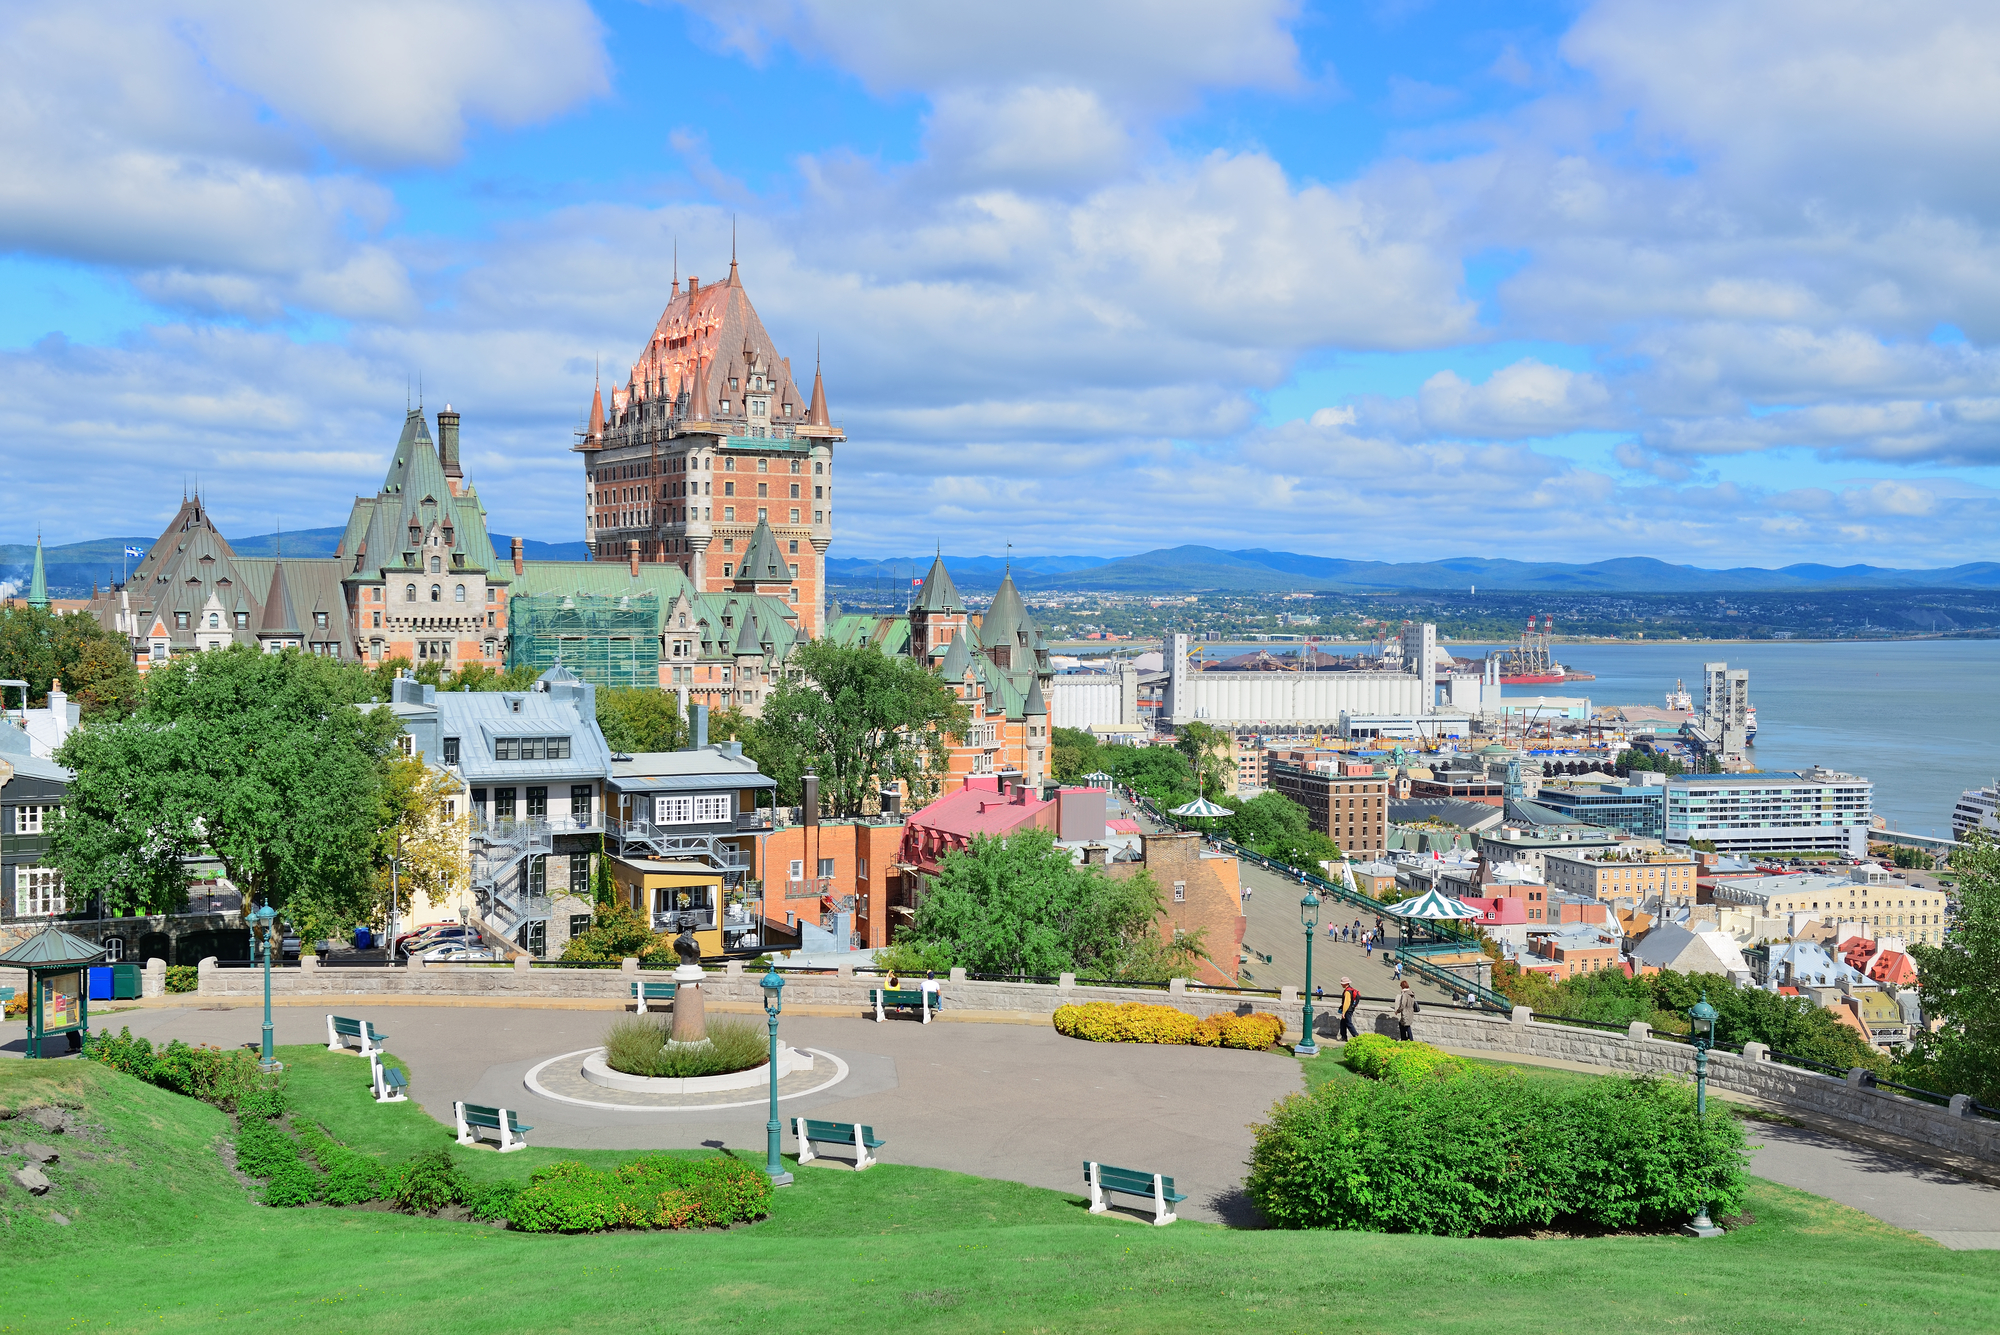 La prochaine convention des Entreprises du Voyage Ile-de-France aura lieu à Québec - Depositphotos, auteur rabbit75_dep